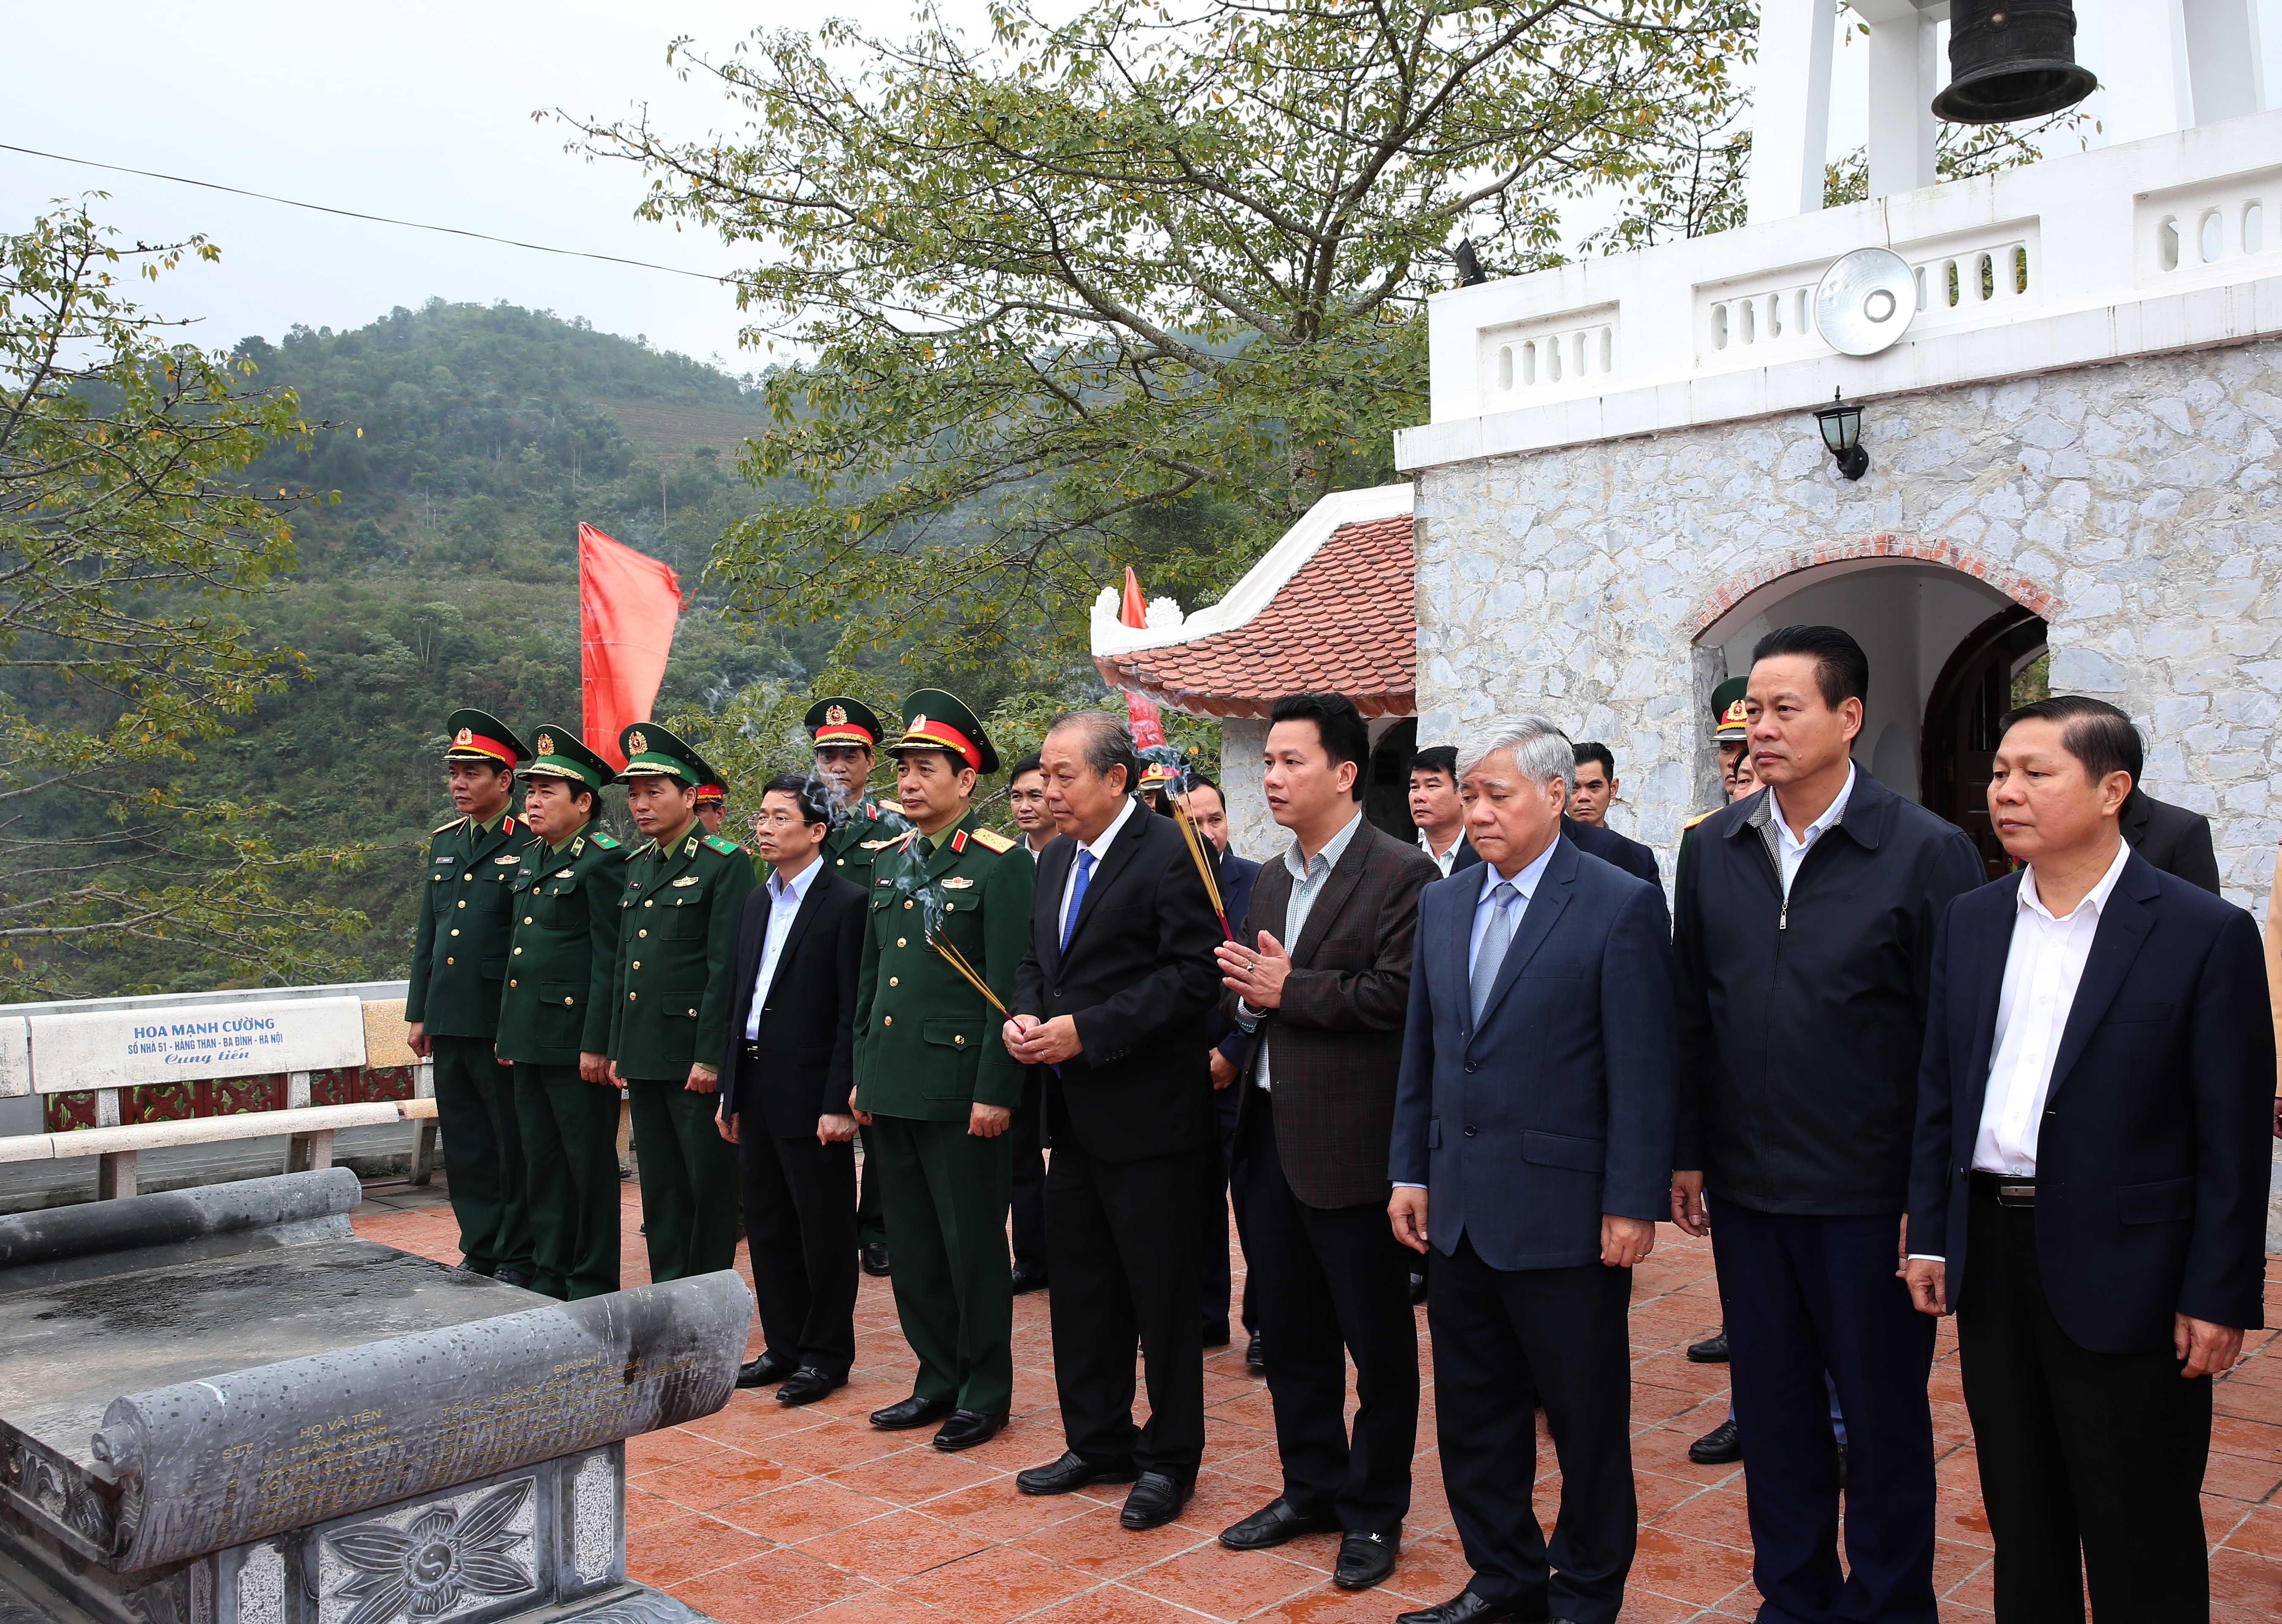 Phó Thủ tướng thăm điểm cao 468 tại Vị Xuyên, mặt trận ác liệt trong chiến tranh bảo vệ biên giới phía Bắc. - Ảnh: VGP/Lê Sơn